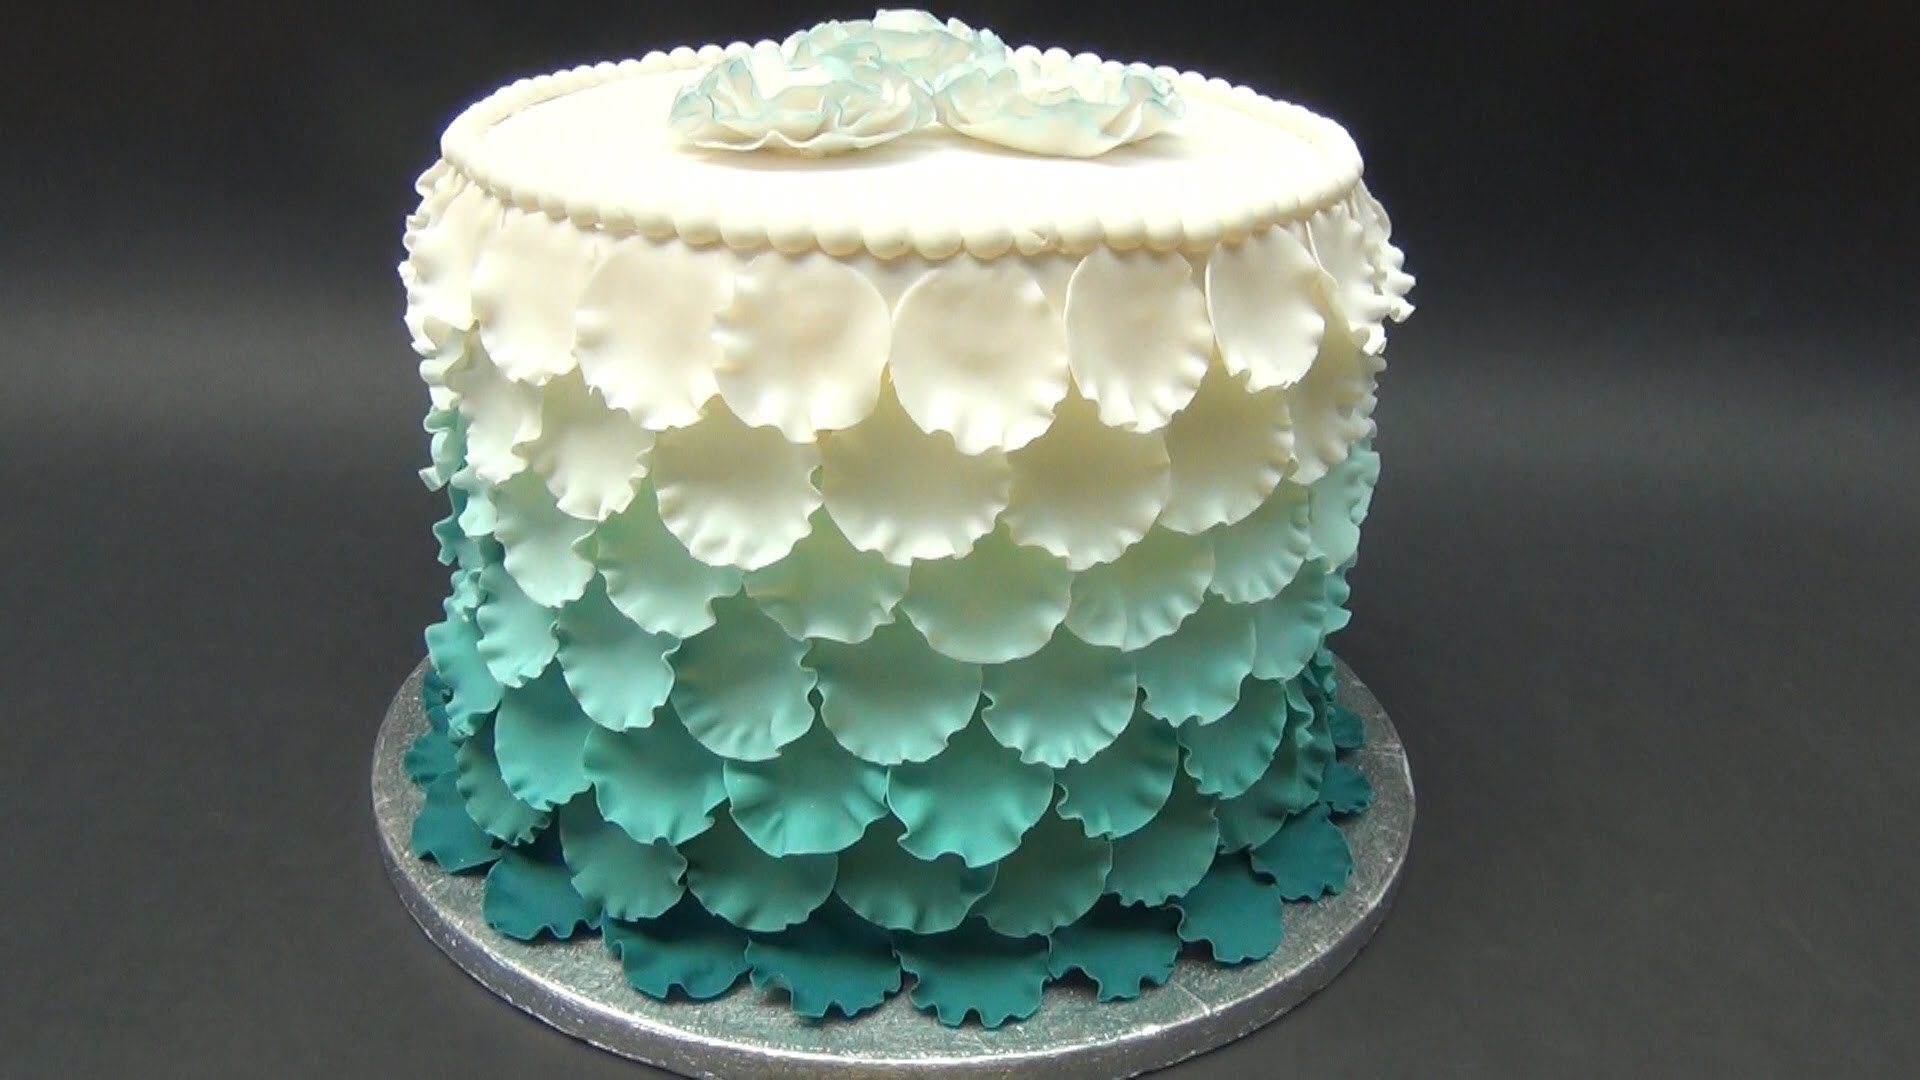 Torta con petali effetto degrade' , How-to make an Ombre Ruffle Cake